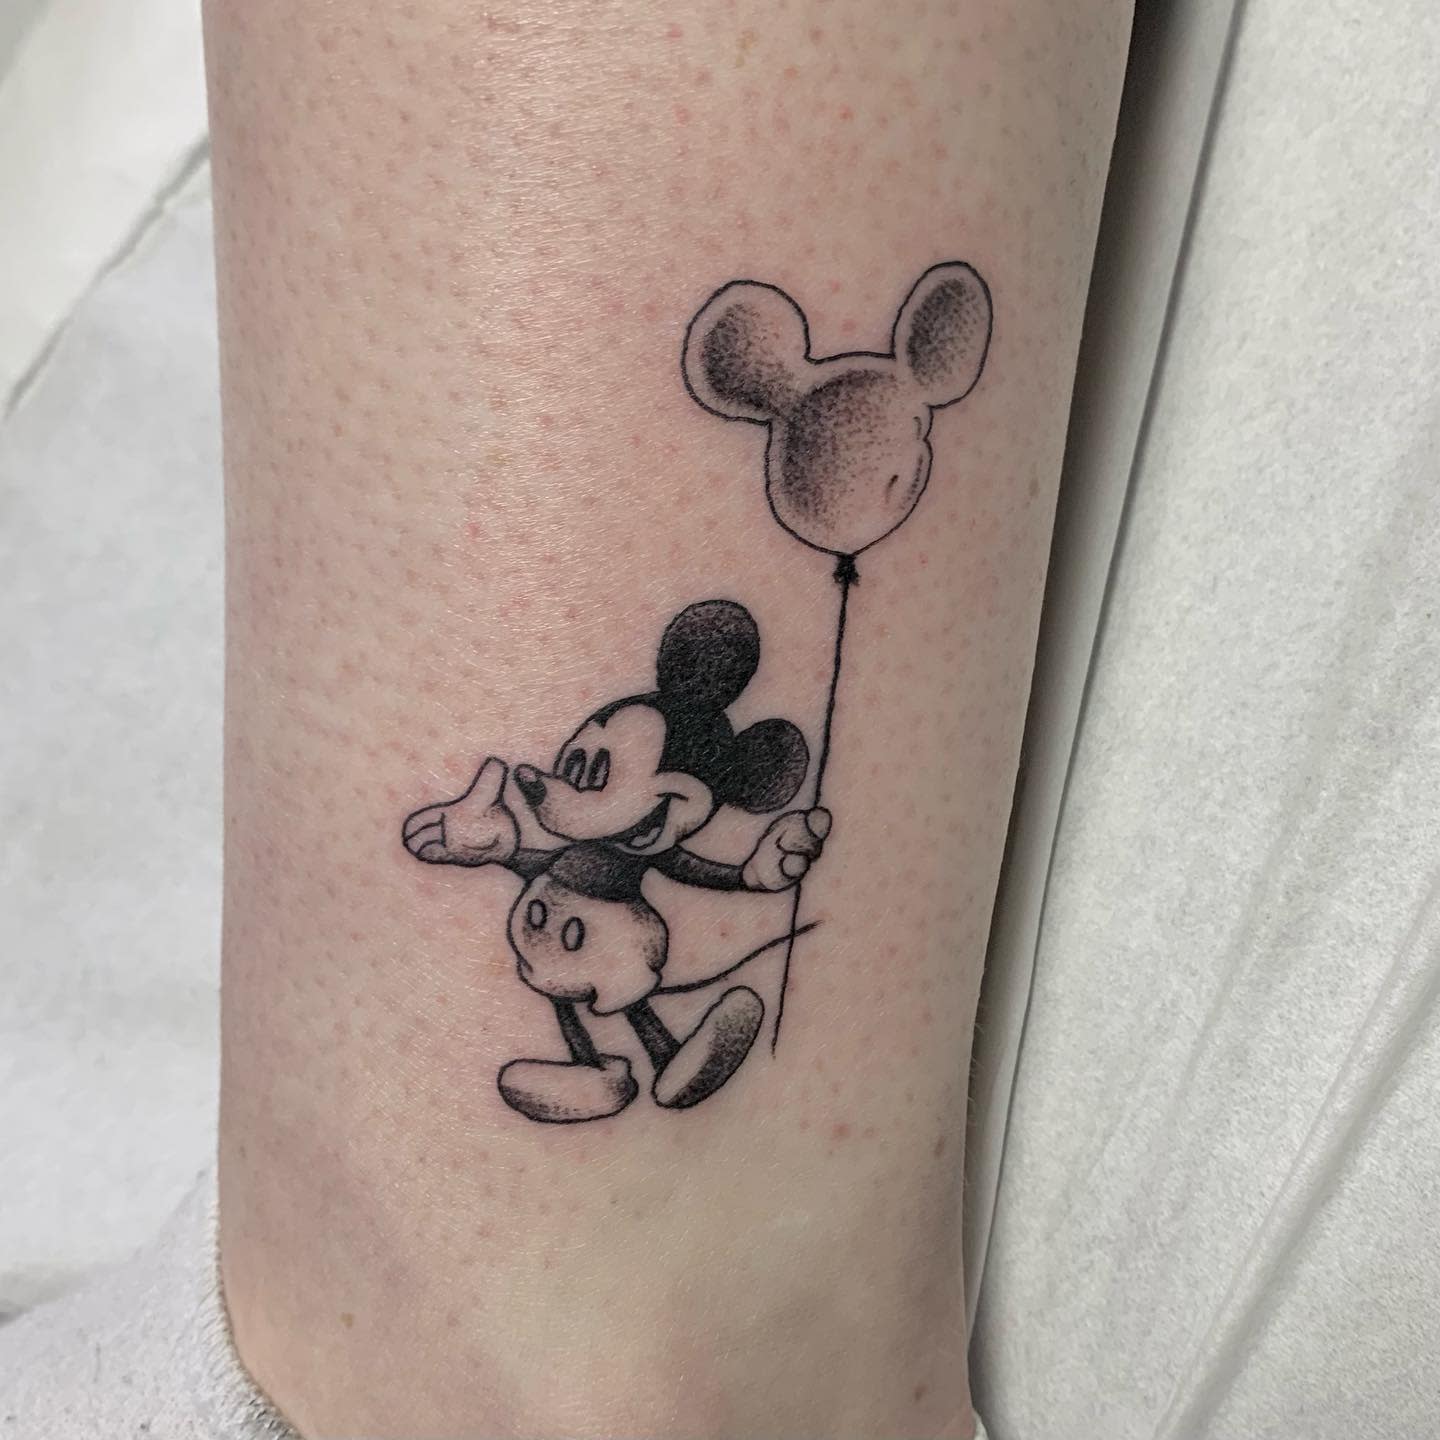 Tatuaje De Mickey Mouse En El Tobillo -justbethtlbt